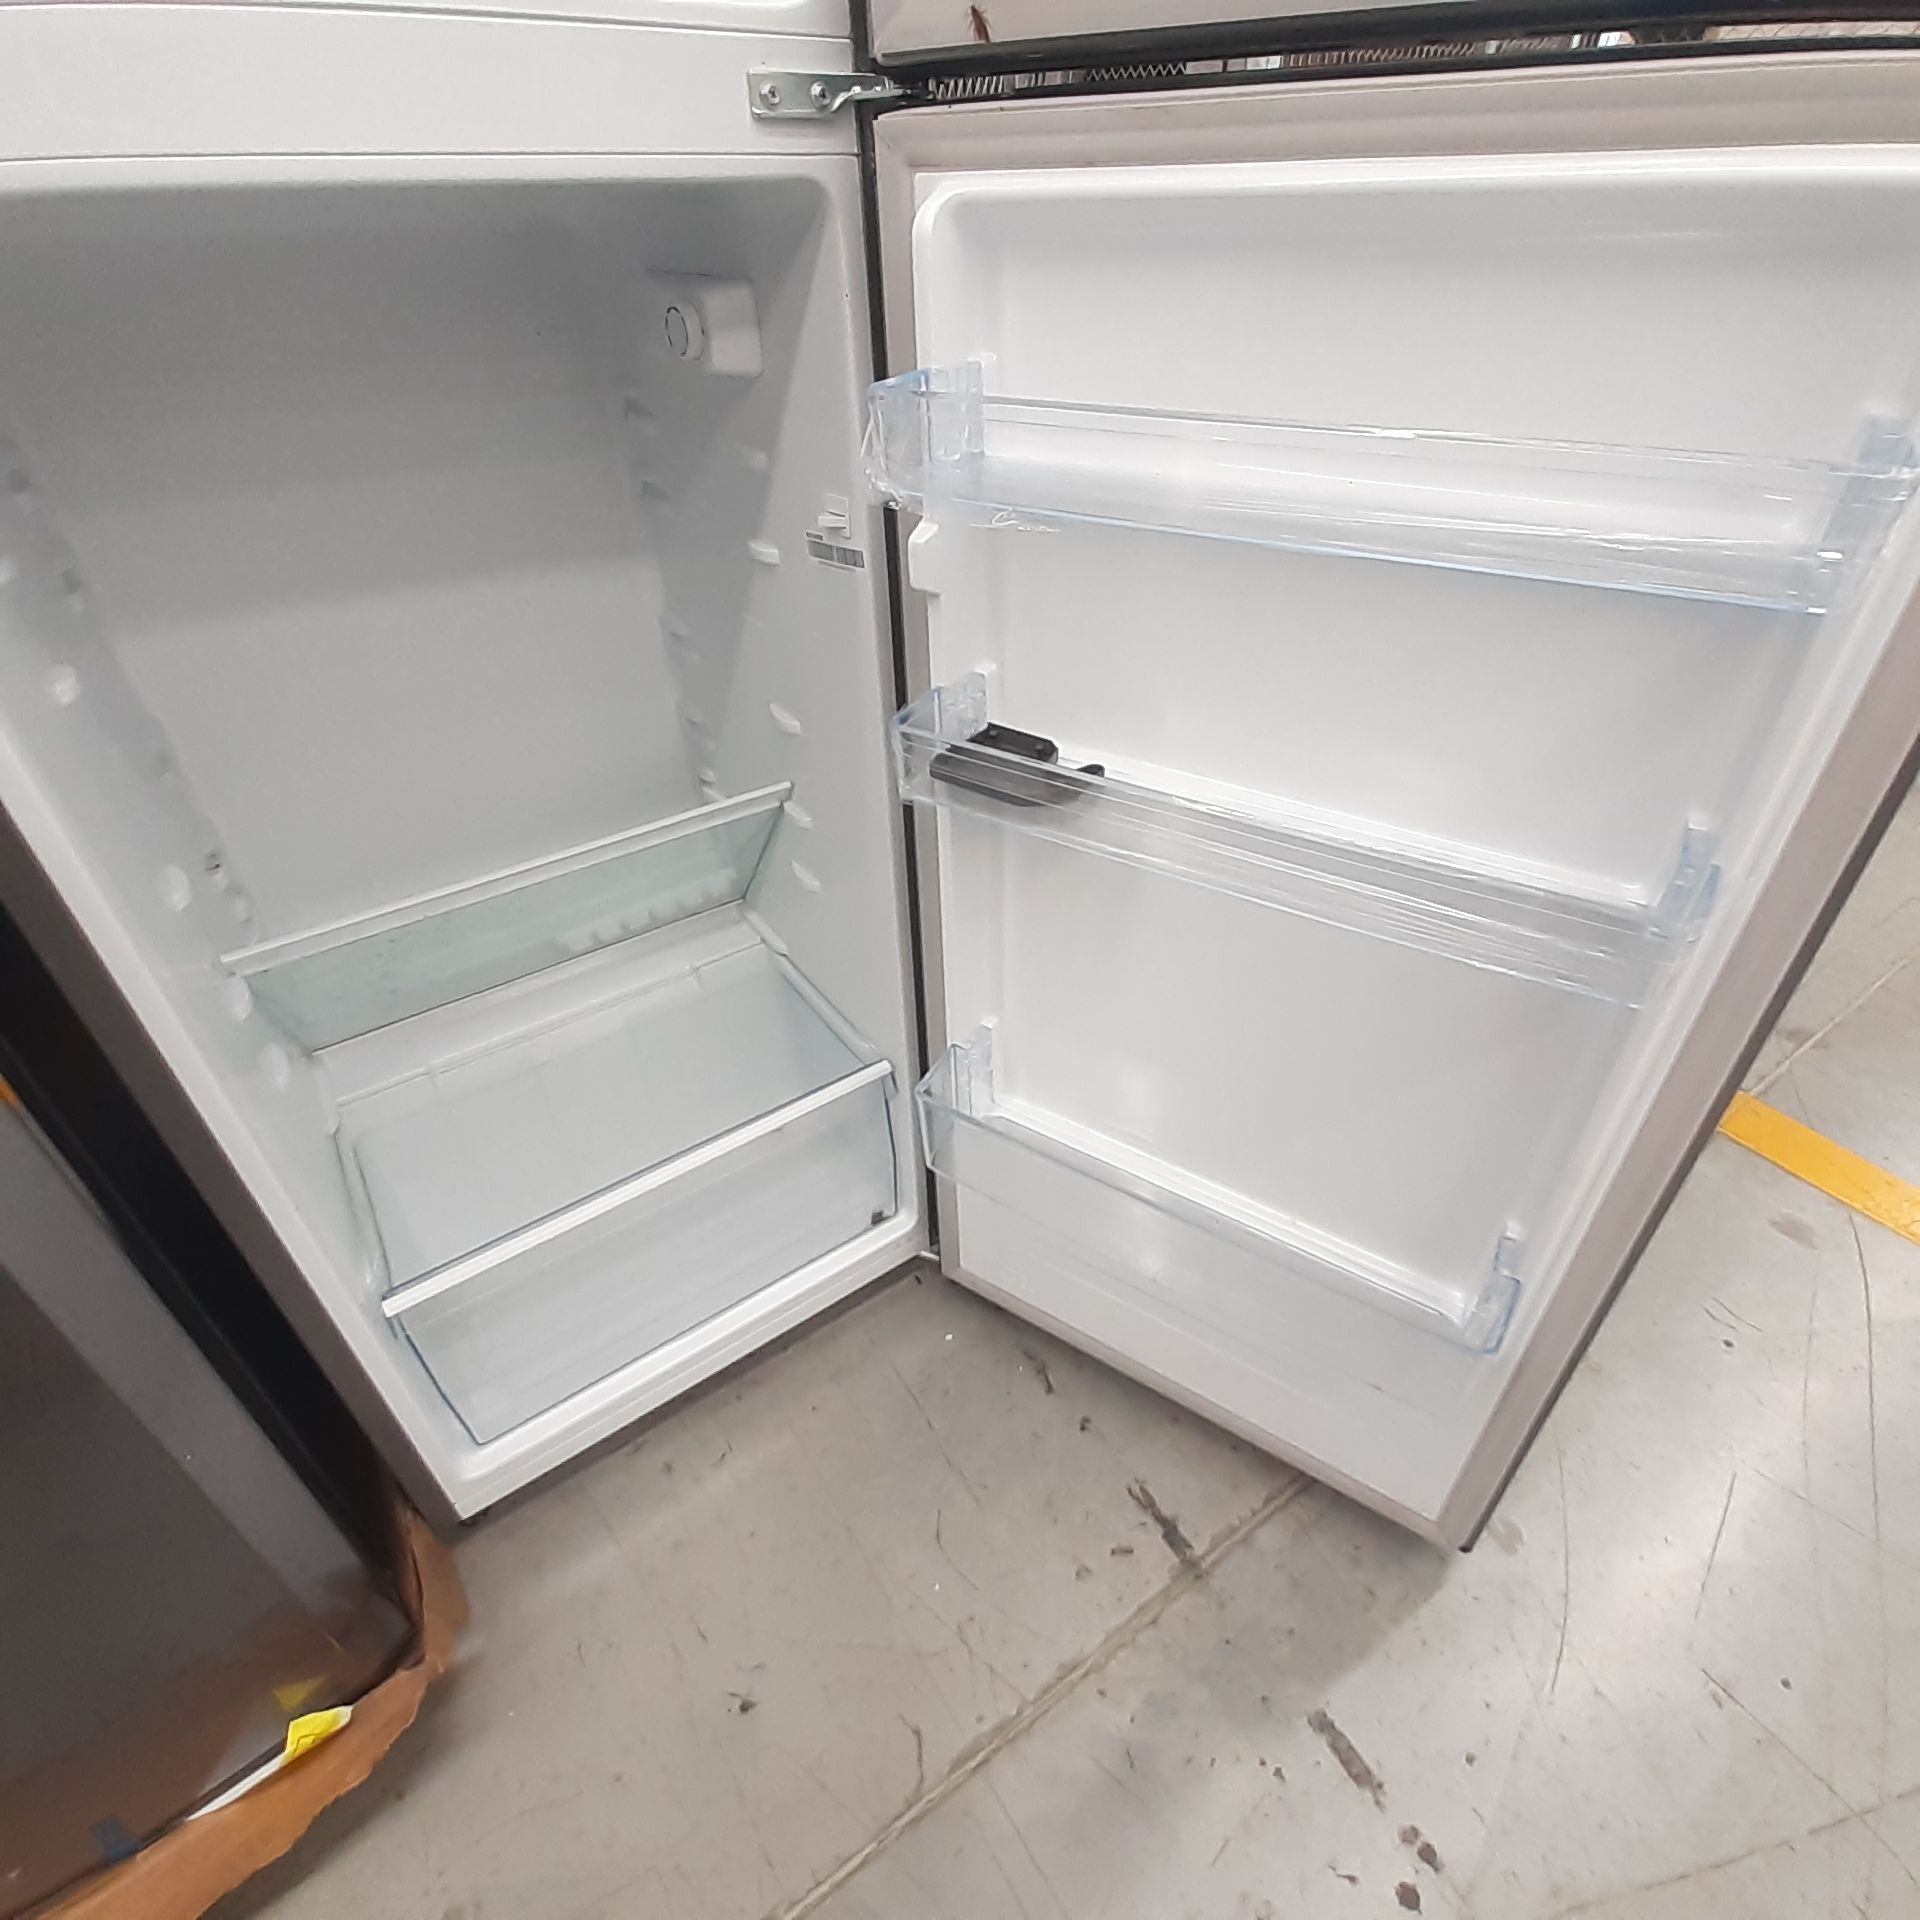 Lote De 2 Refrigeradores Contiene: 1 Refrigerador Marca Mabe, 1 Refrigerador Marca Hisense, Distinto - Image 13 of 14